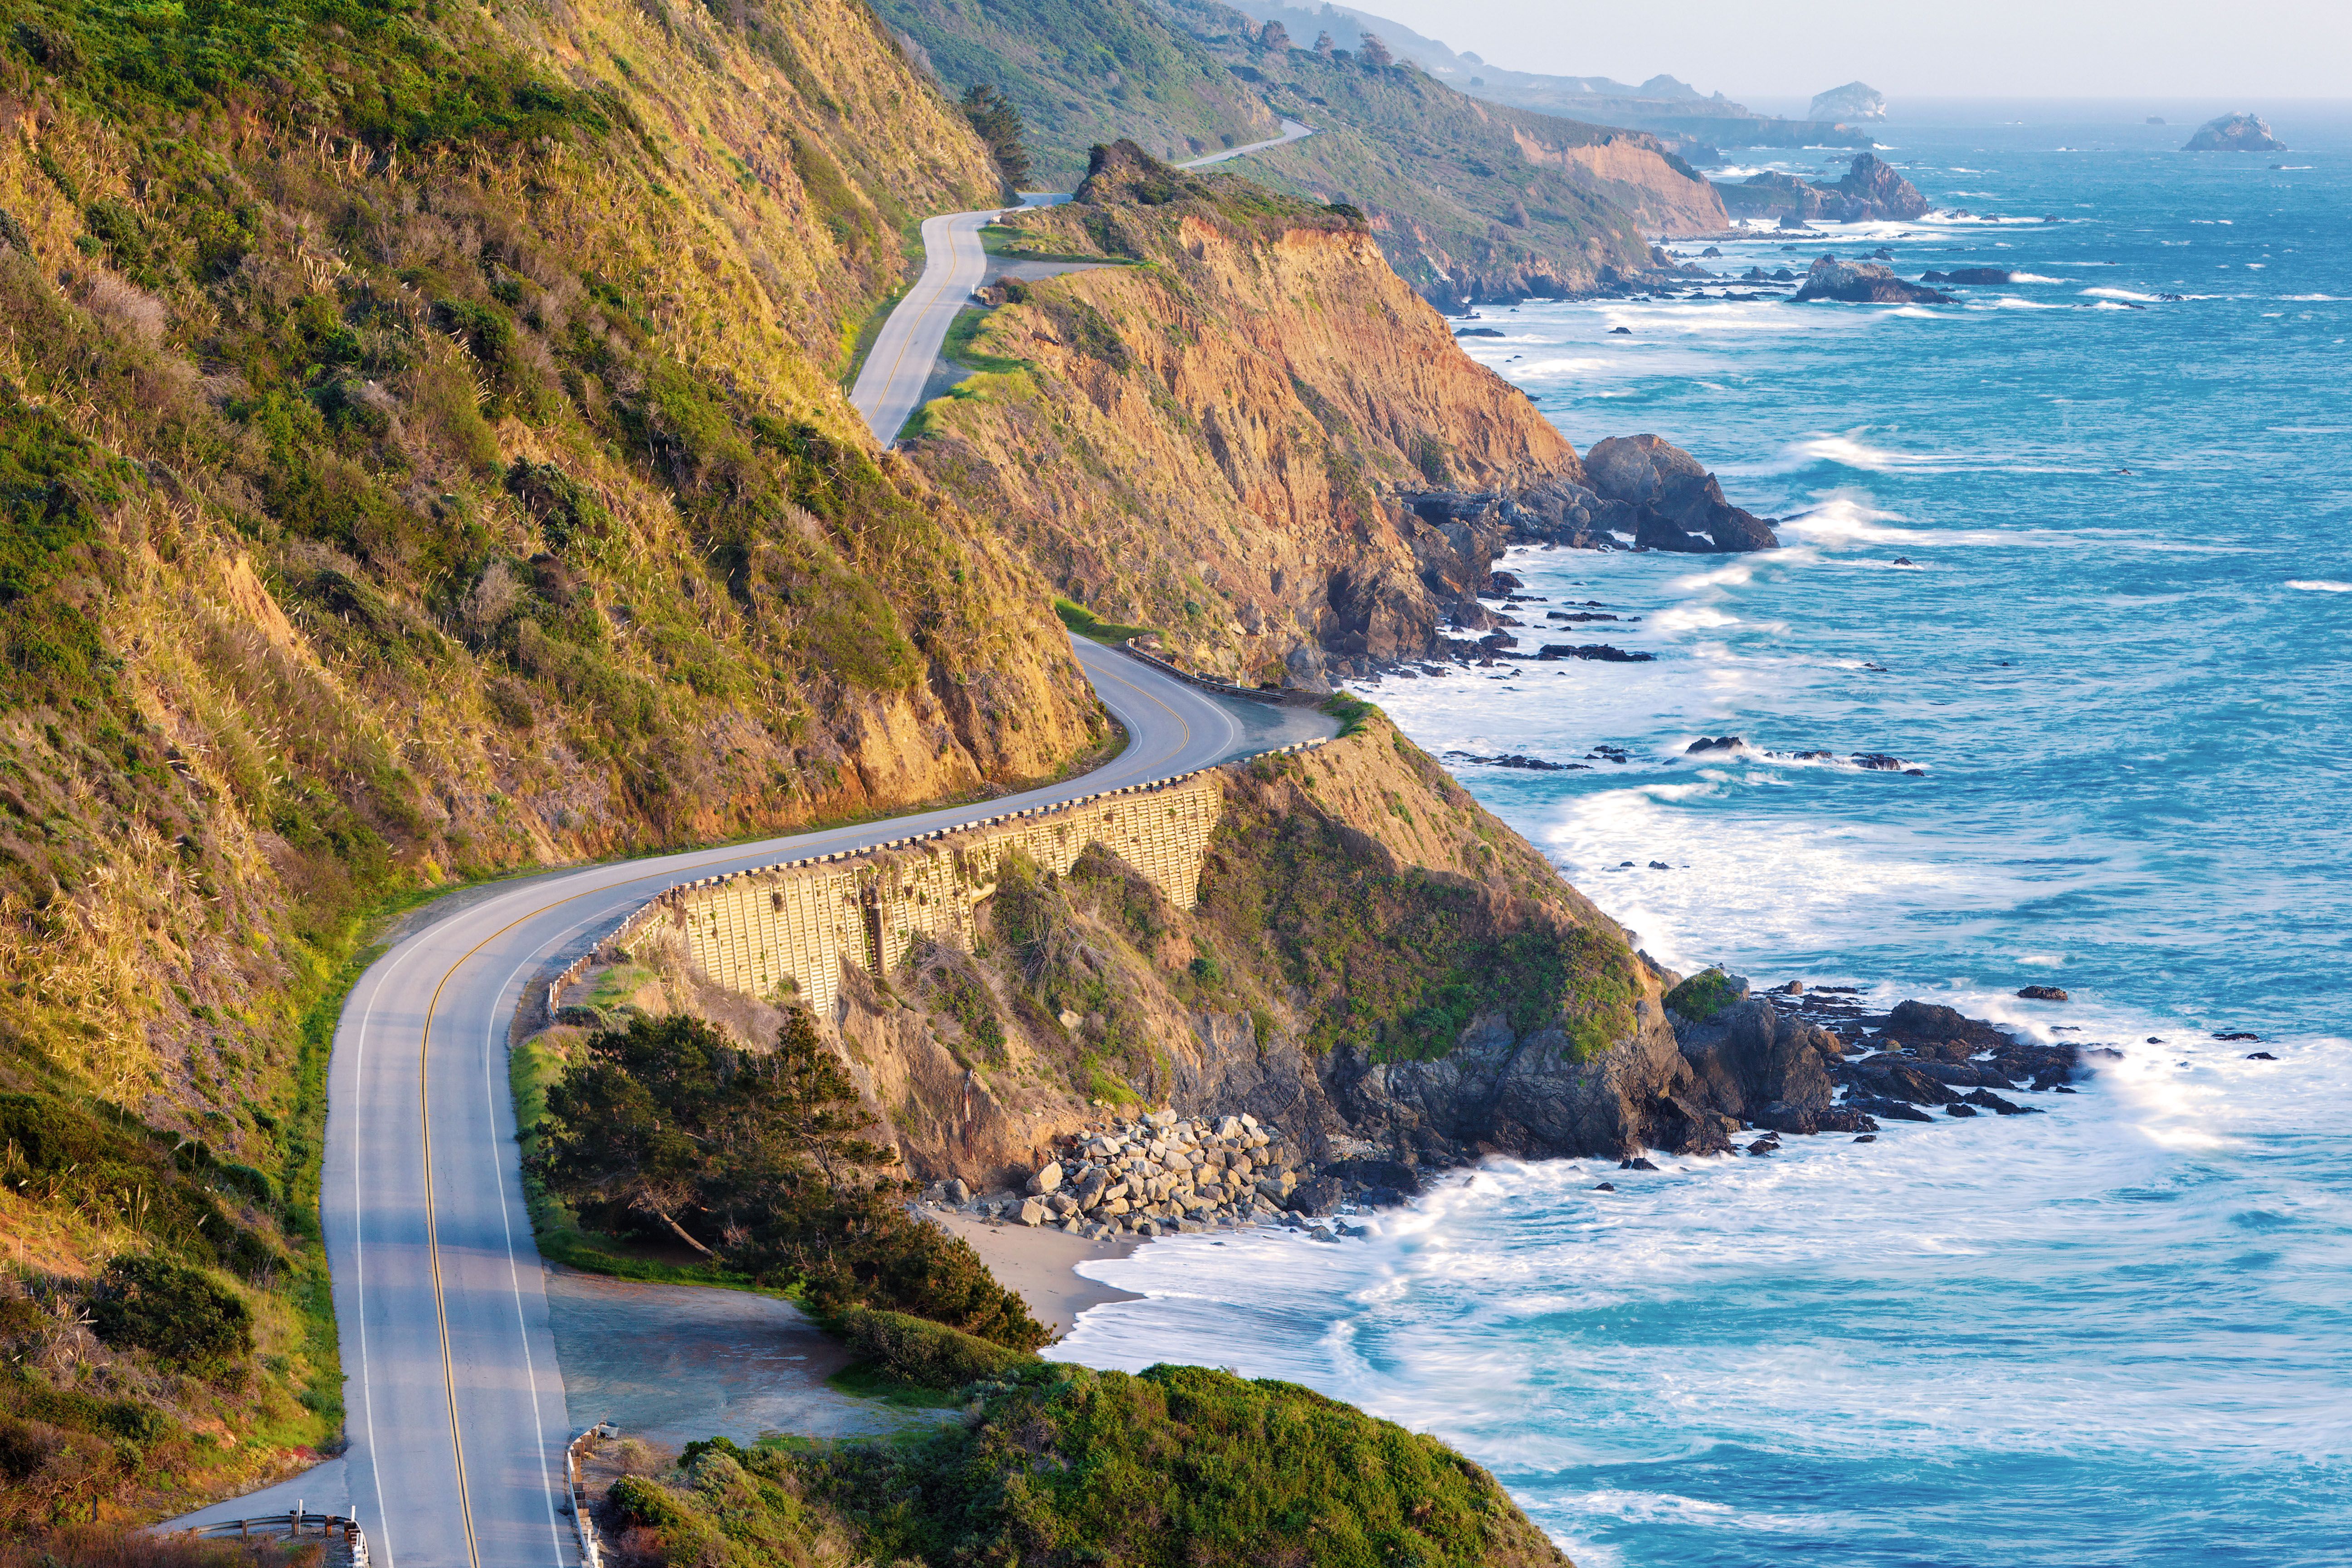 Pacific Coast Highway - Highway 1